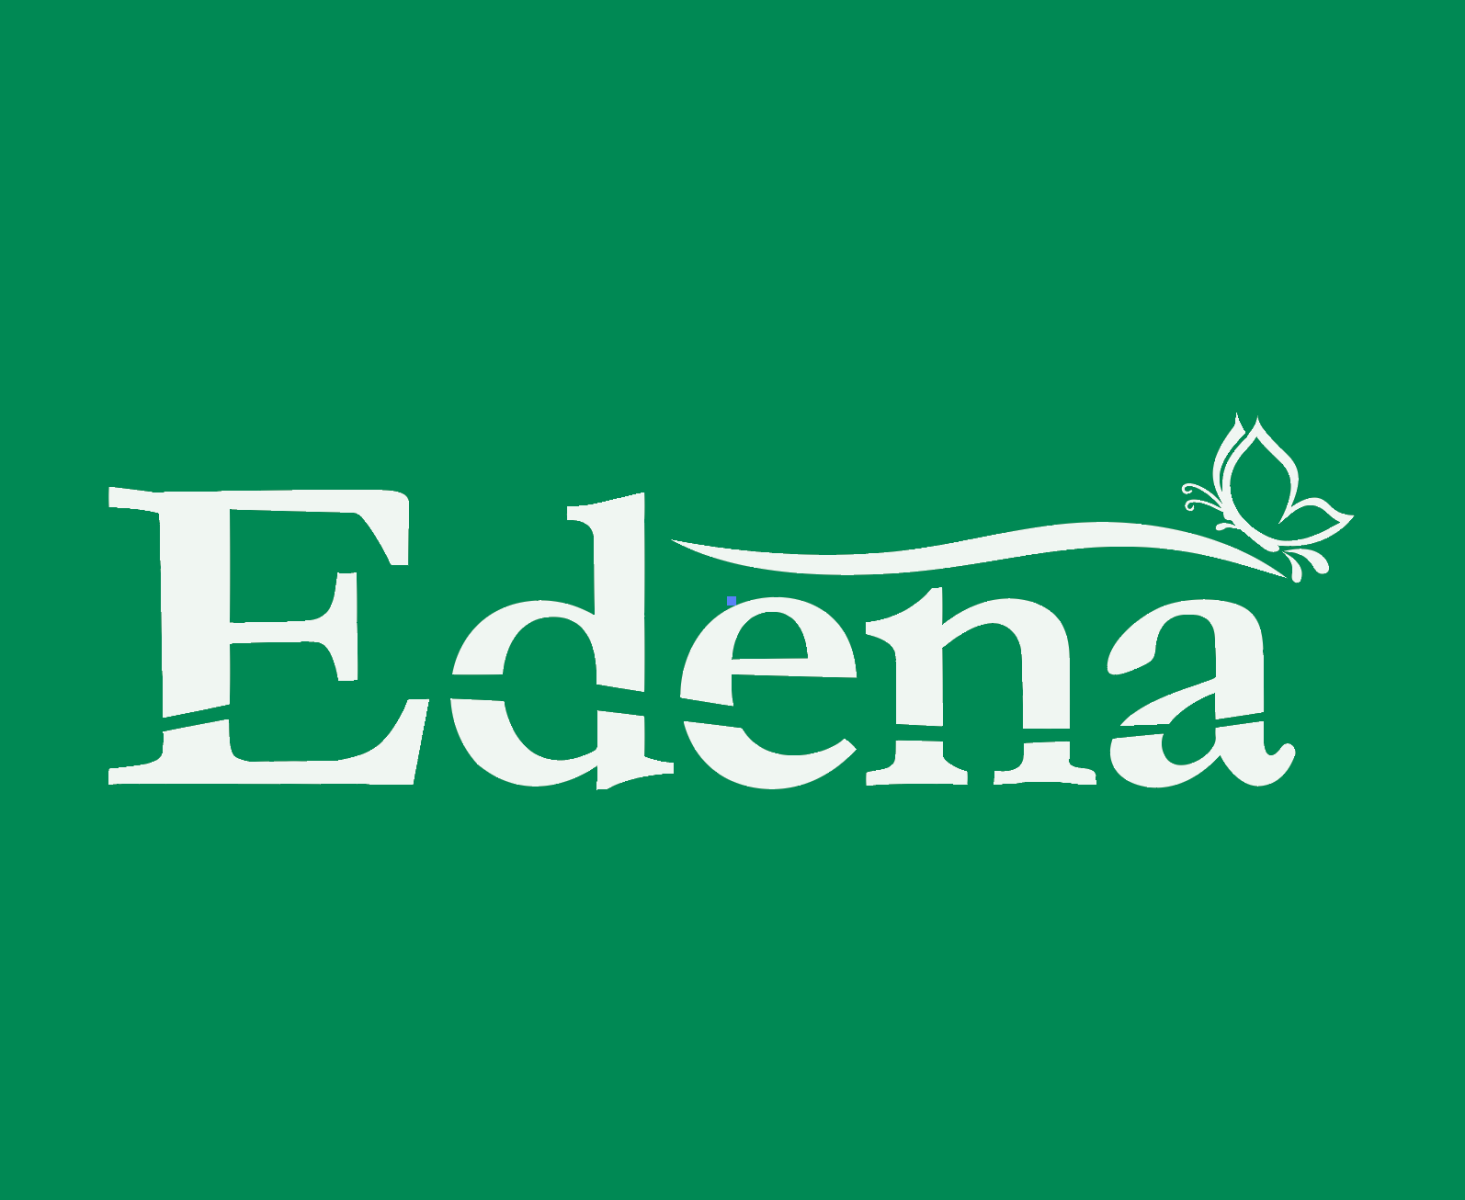 Đánh giá chất lượng nệm bông ép Edena chần gòn